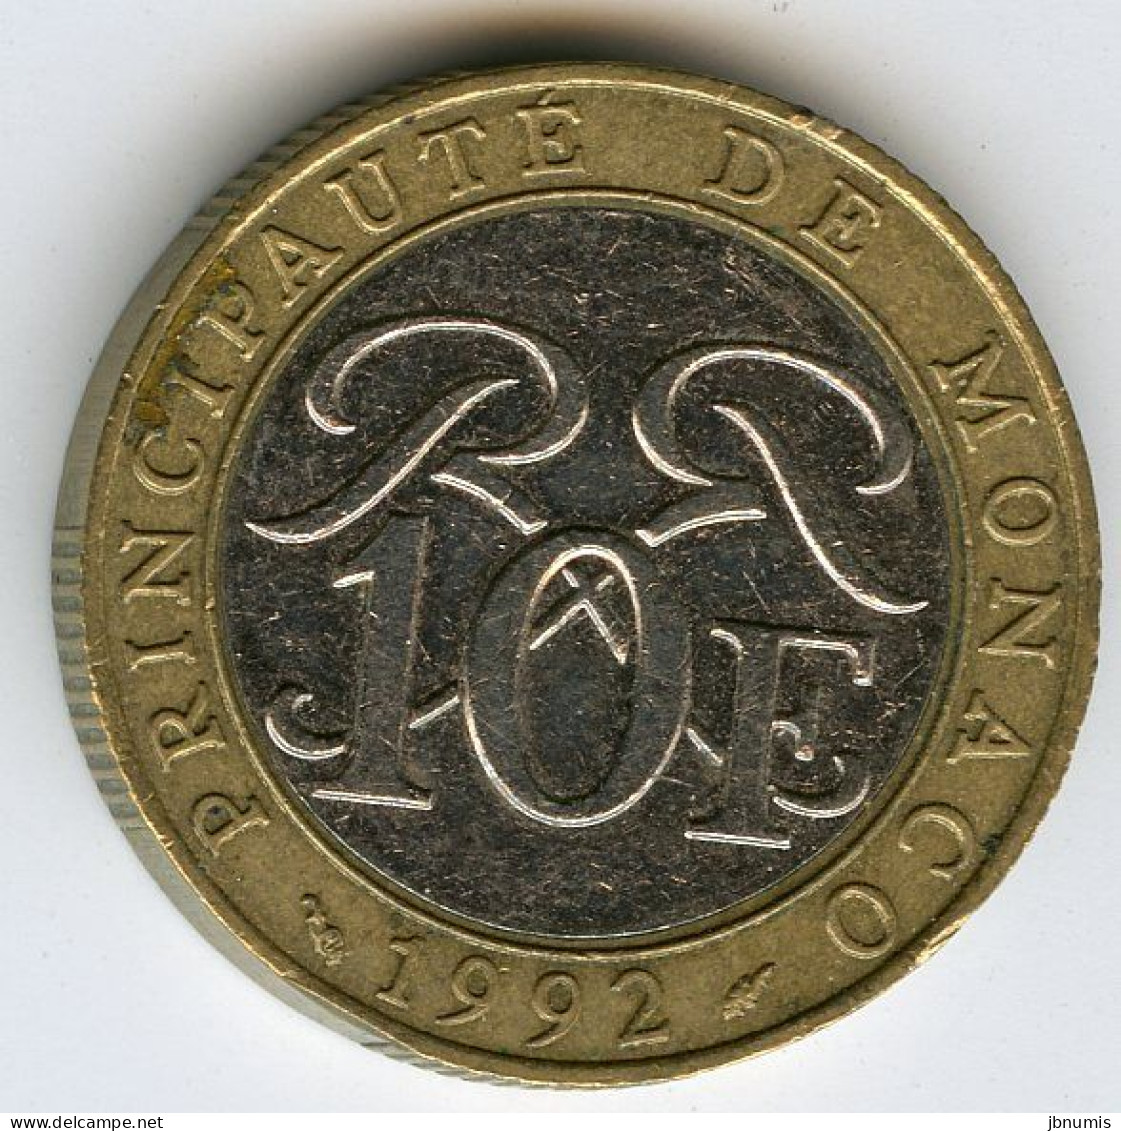 Monaco 10 Francs 1992 GAD 160 KM 163 - 1960-2001 Nouveaux Francs